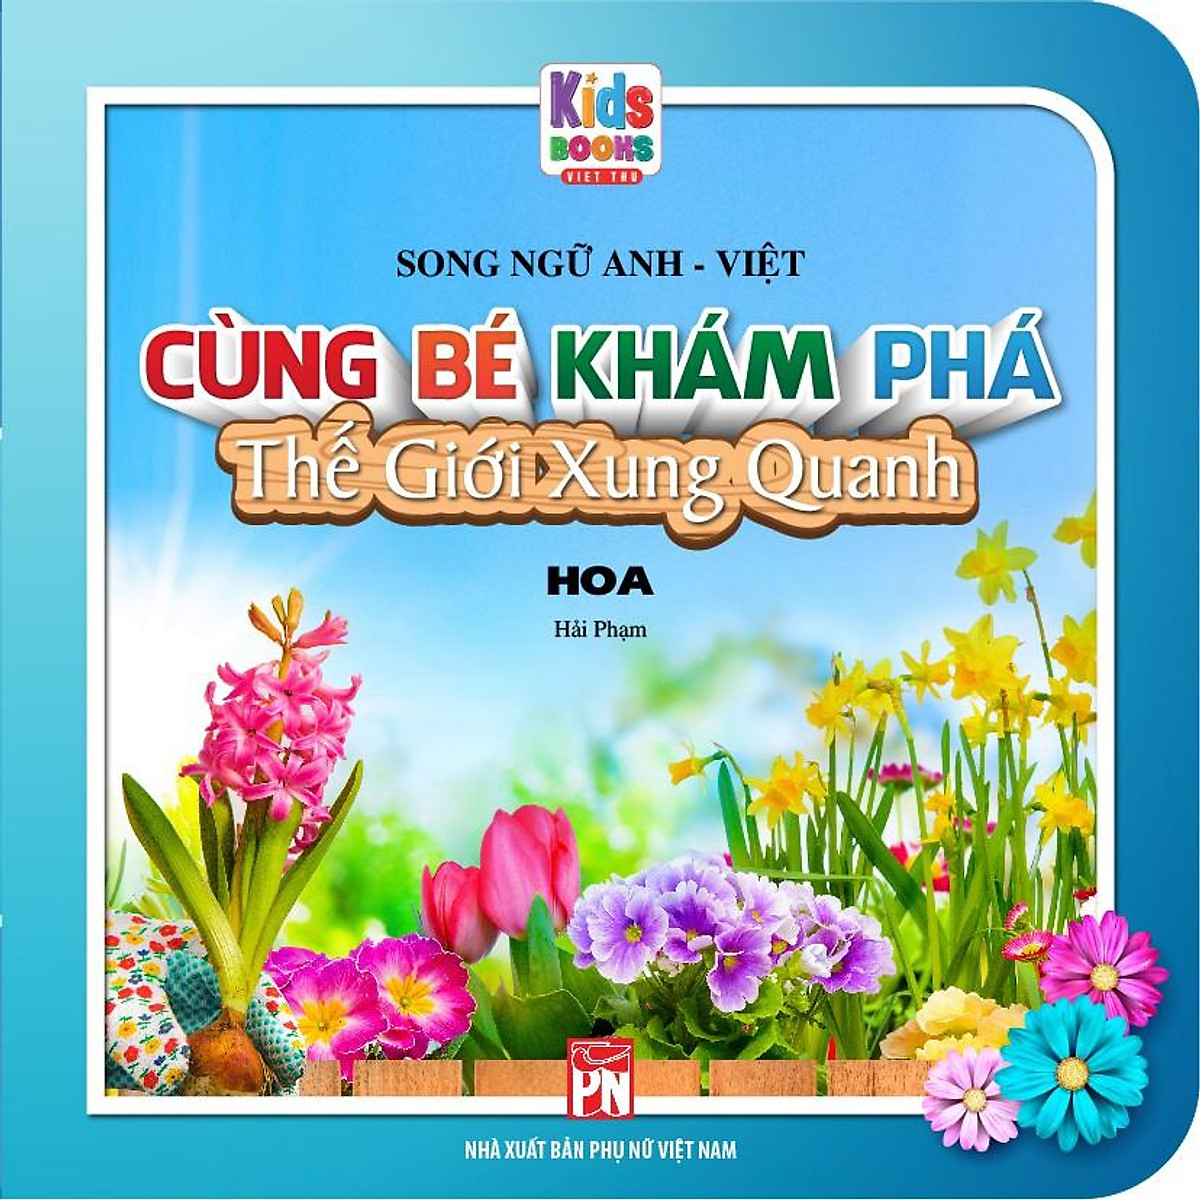 Sách - Boxset Cùng Bé Khám Phá Thế Giới Xung Quanh bìa Hồng - Song Ngữ Anh-Việt (Bộ 5 Cuốn)